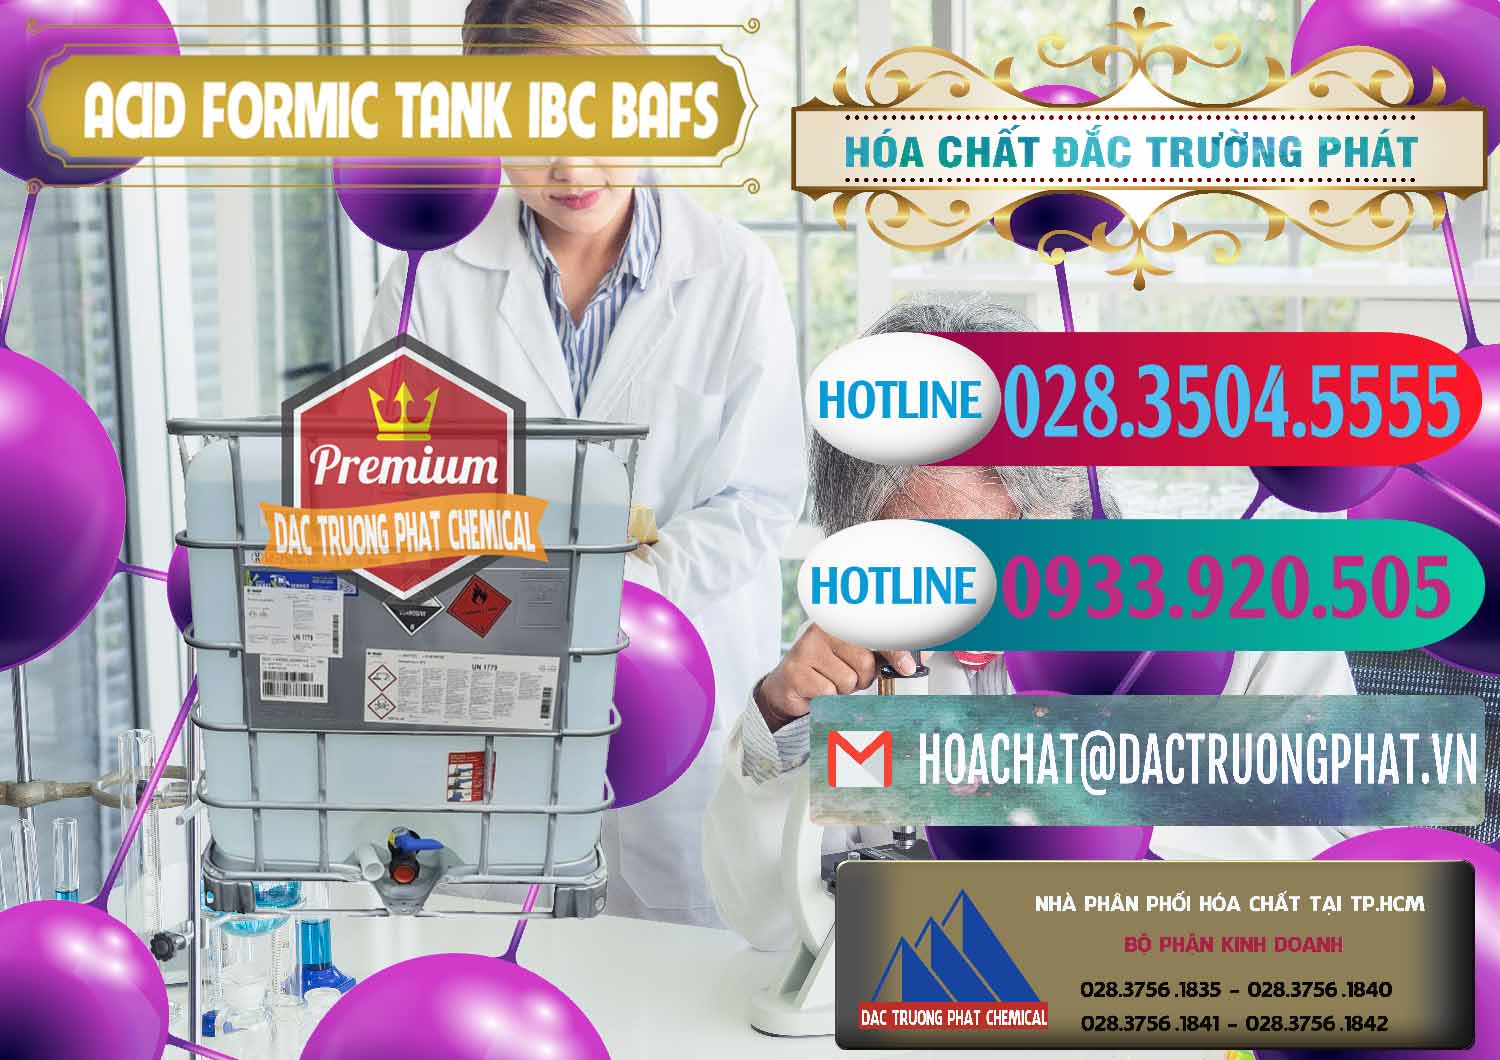 Công ty nhập khẩu và bán Acid Formic - Axit Formic Tank - Bồn IBC BASF Đức - 0366 - Chuyên kinh doanh _ cung cấp hóa chất tại TP.HCM - truongphat.vn